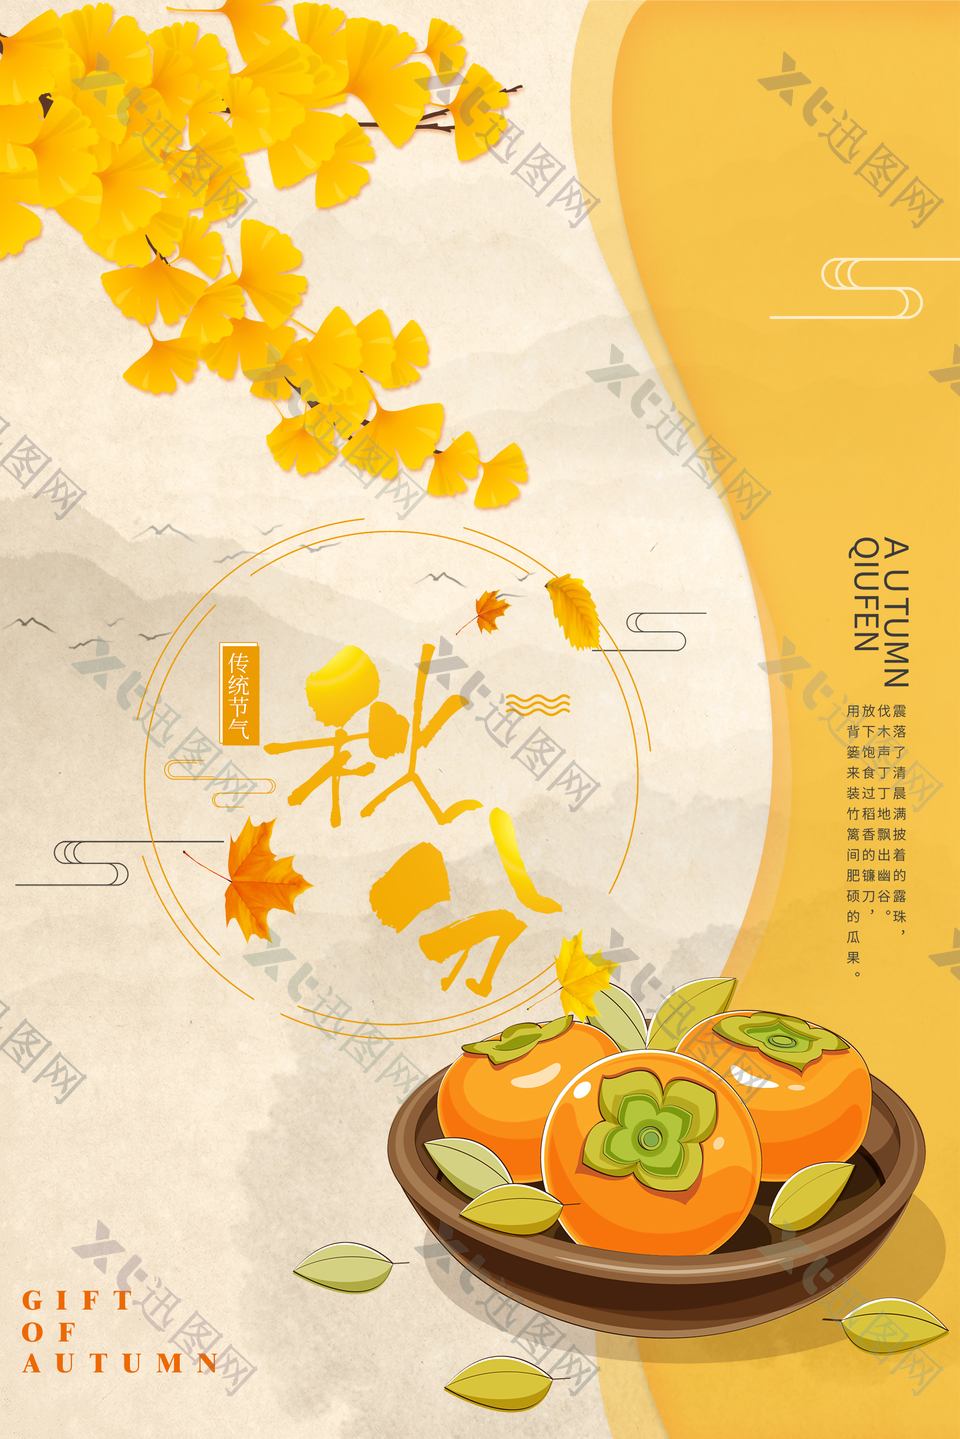 24中国传统节气秋分时节海报